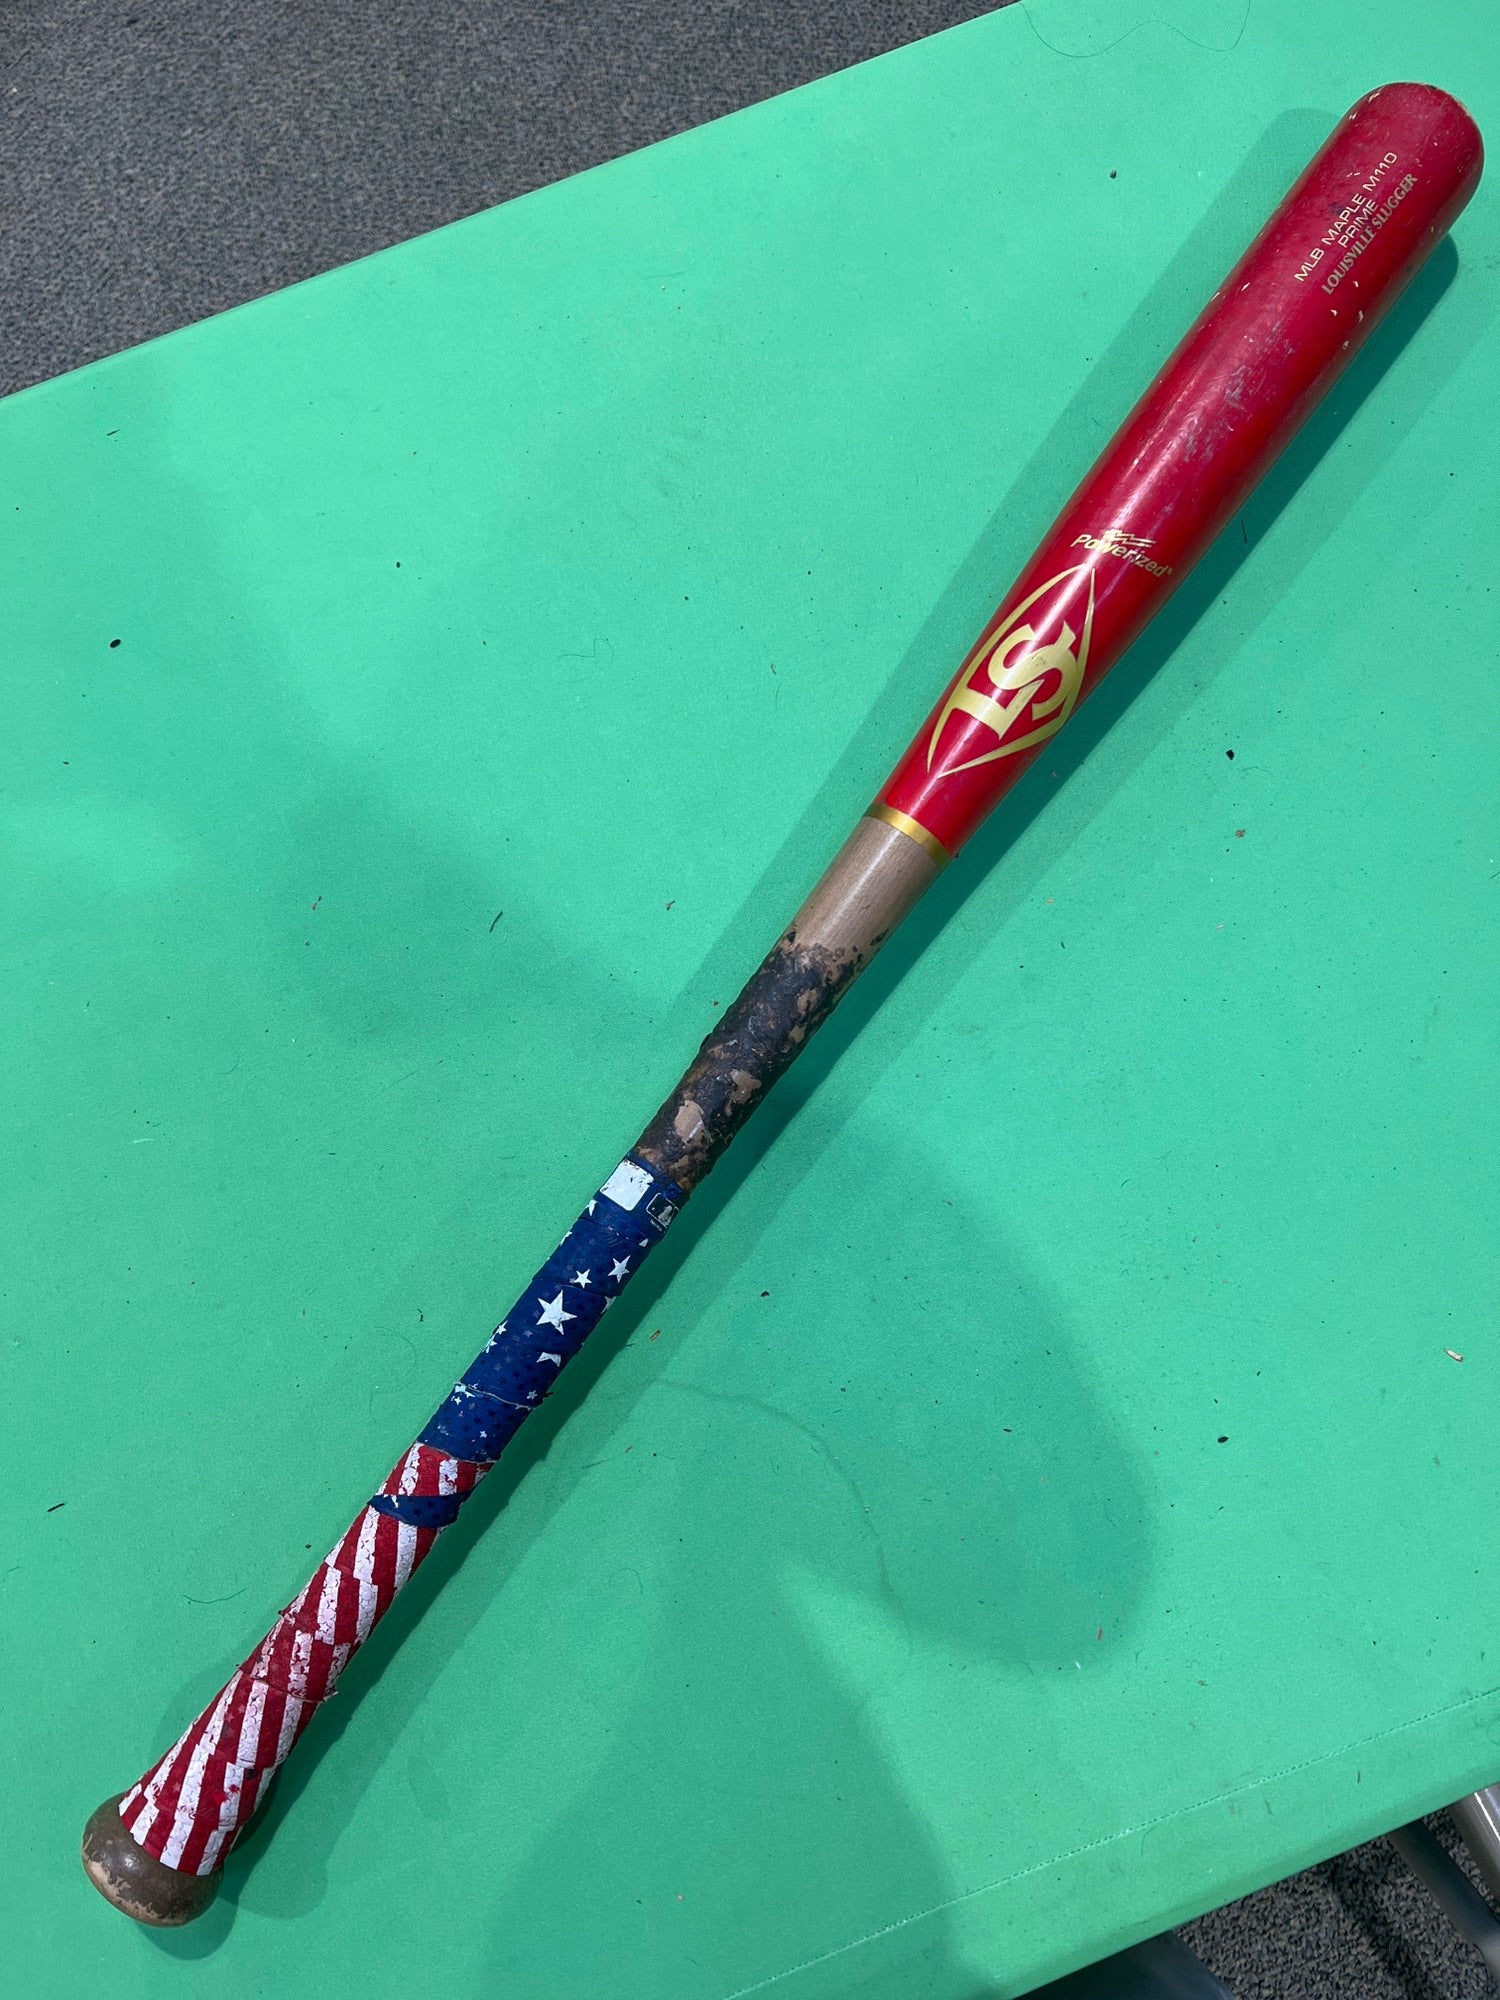 Louisville Slugger Prime Bellinger - Maple Cb35 Wood Baseball Bat in 2023